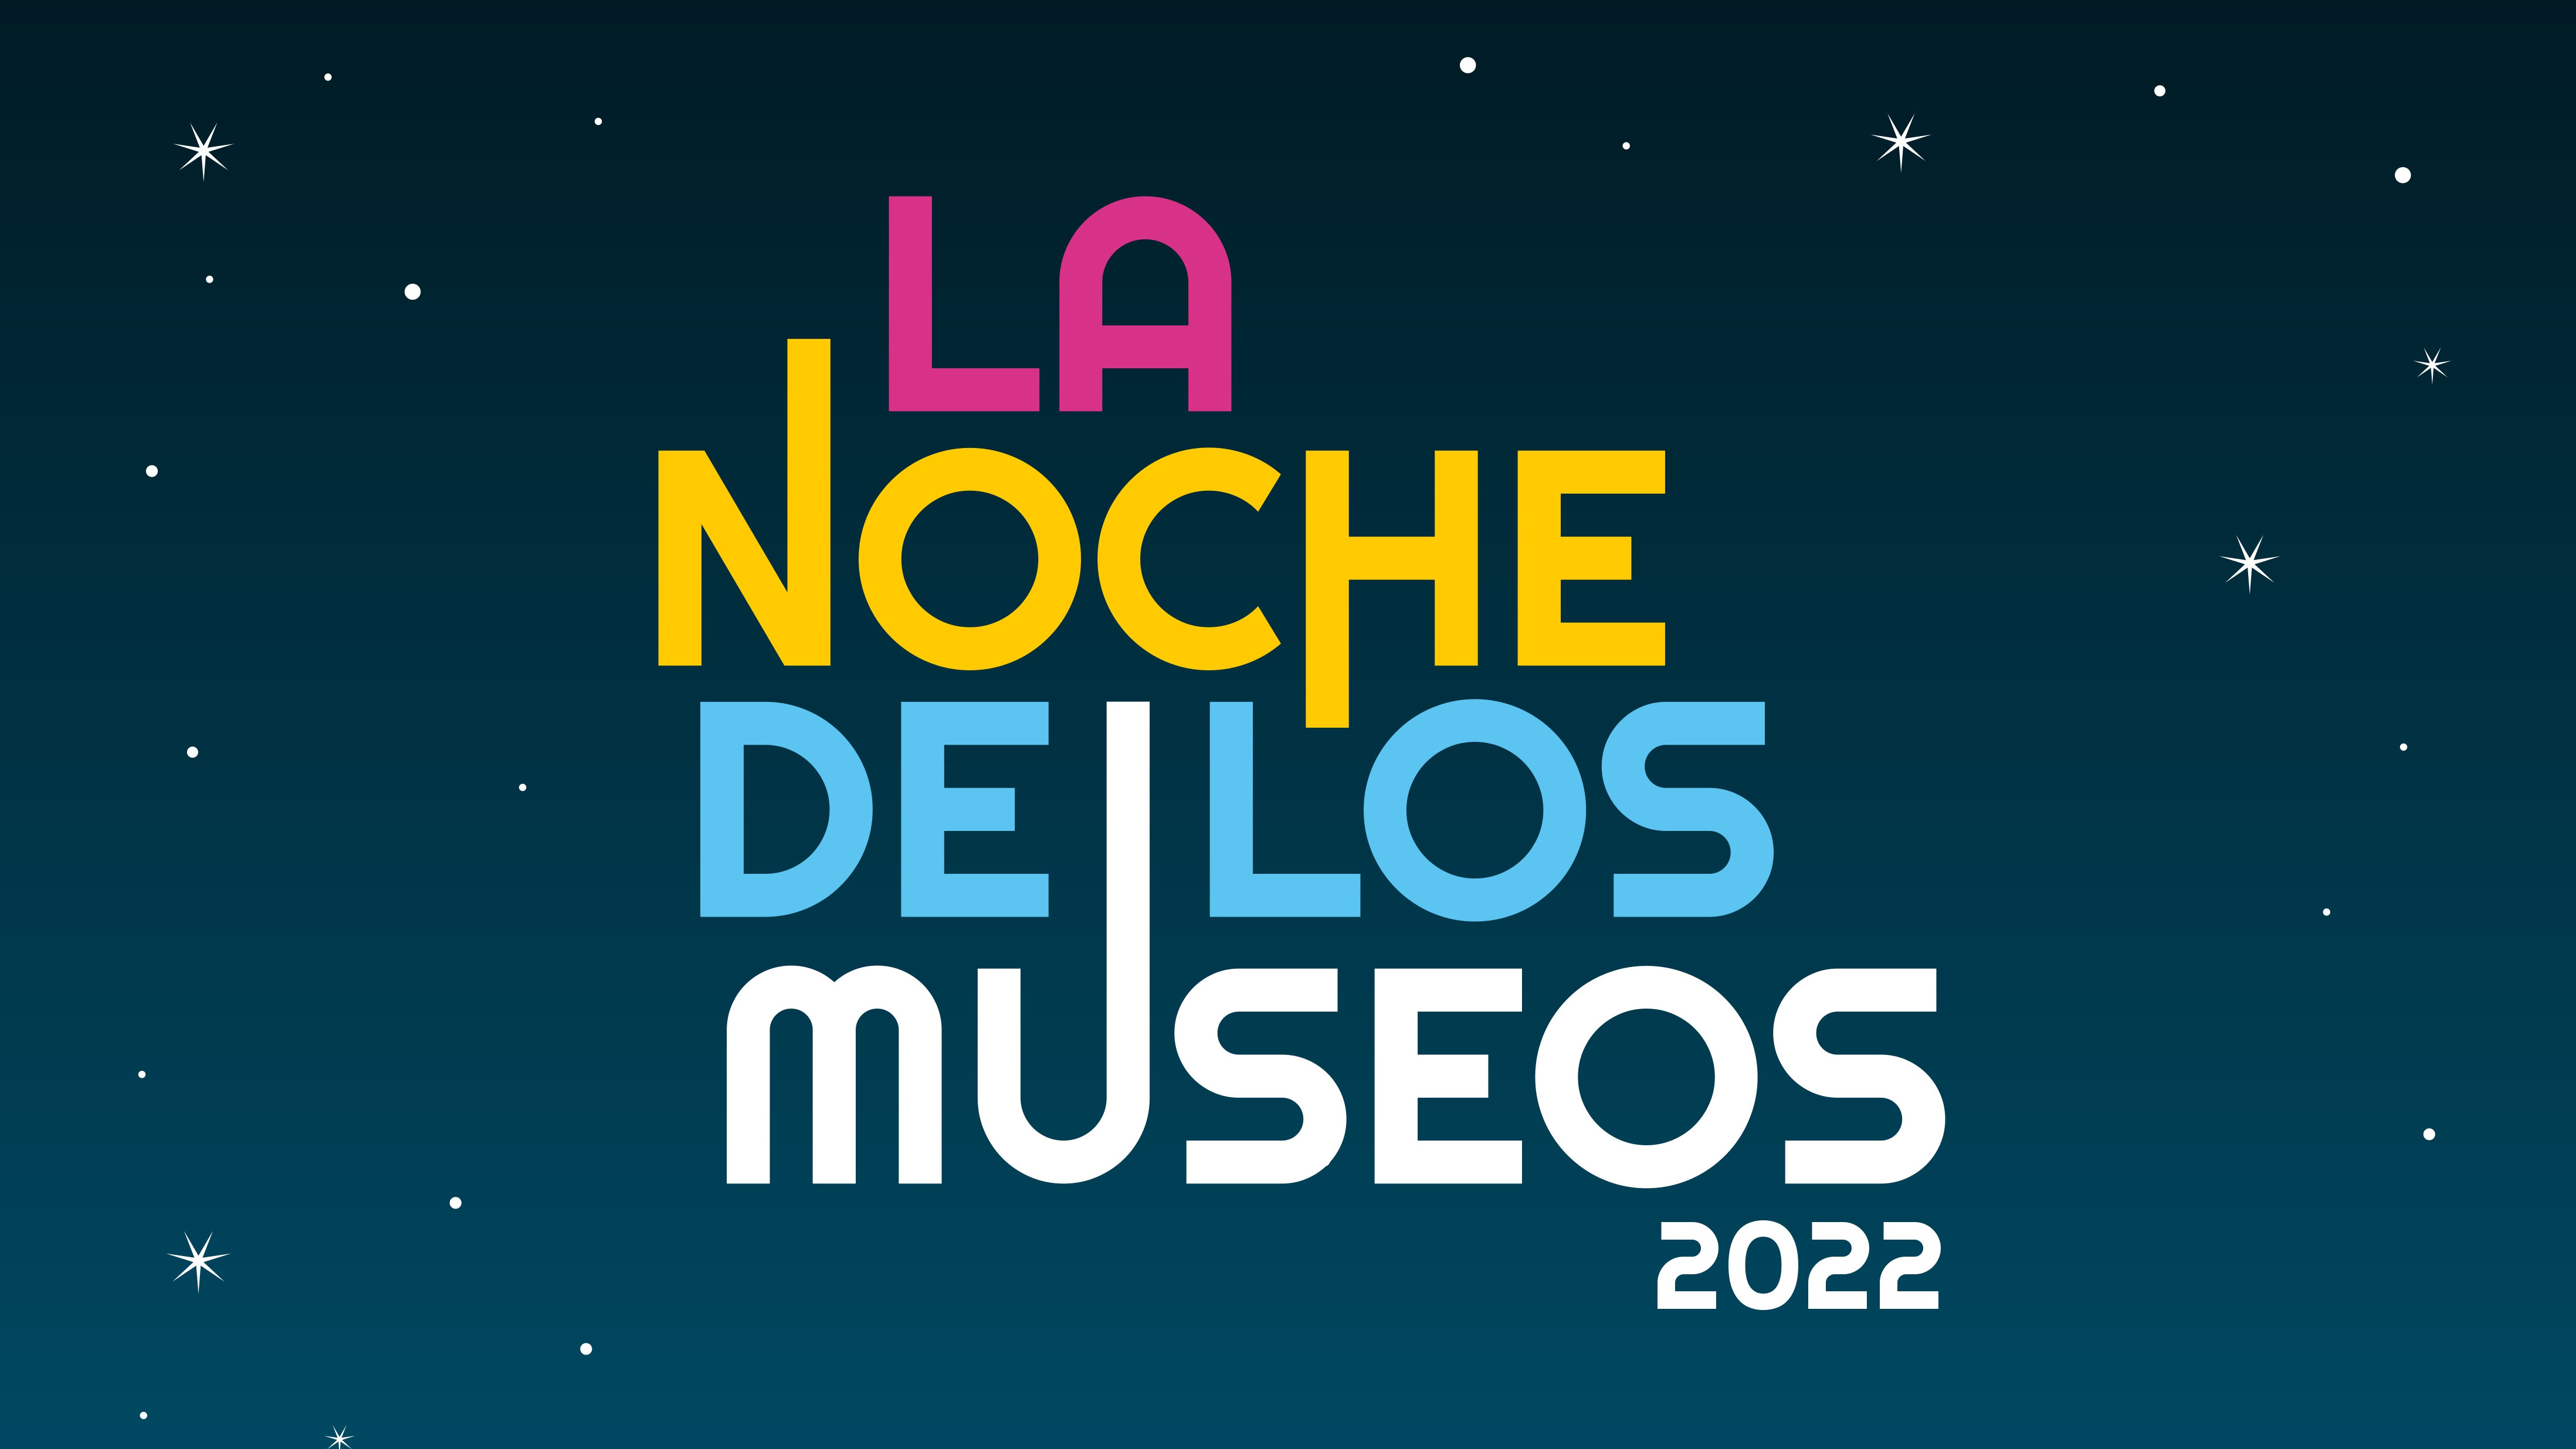 La Noche de los Museos 2022: colectivos y Ecobici gratis